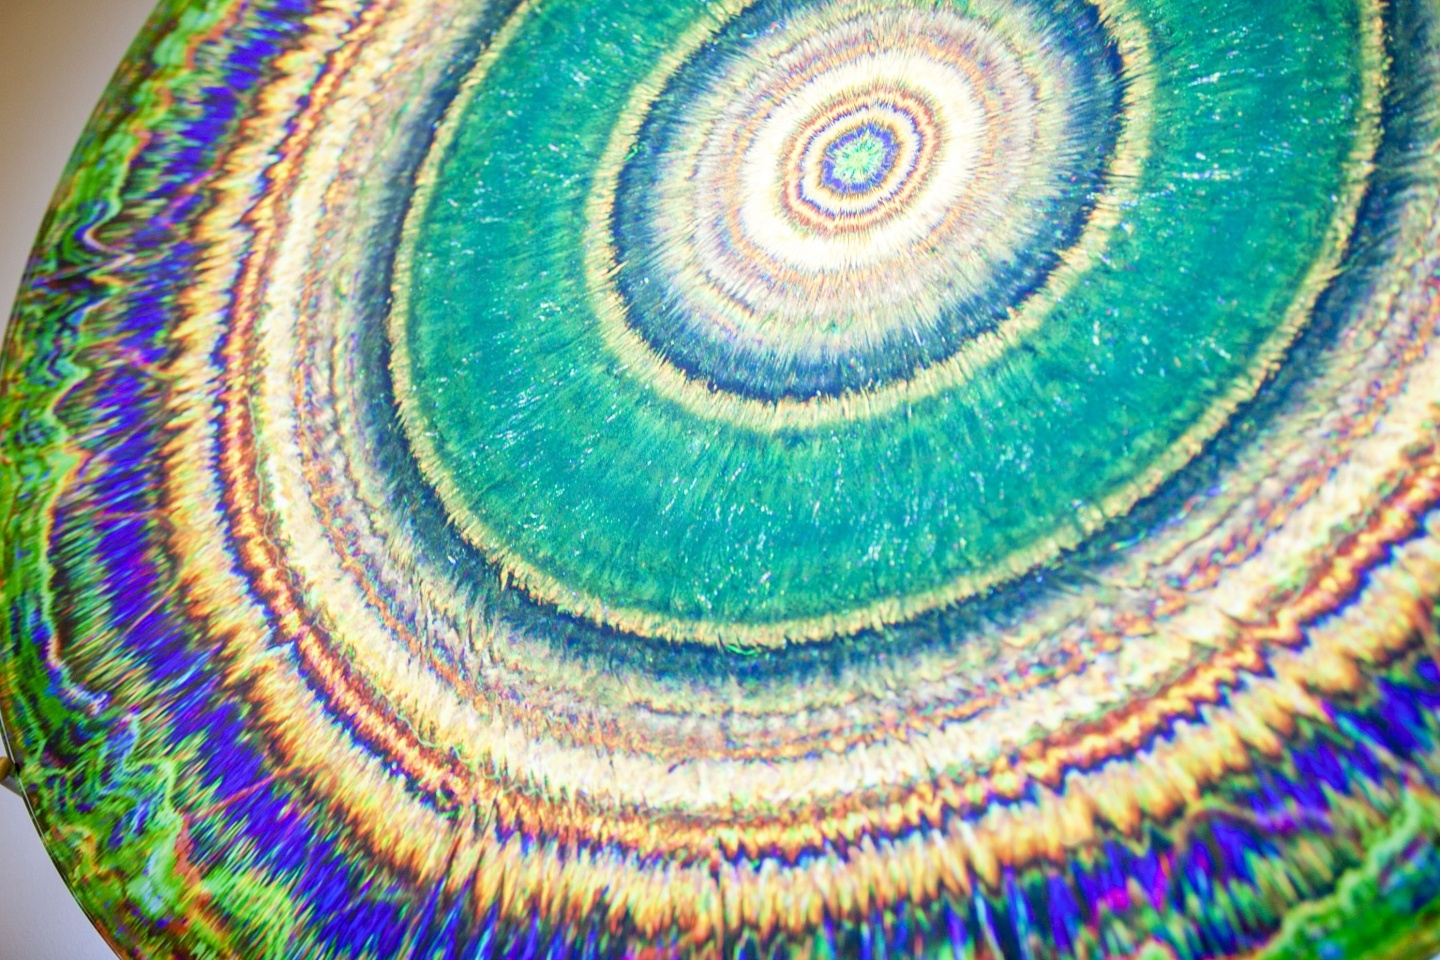 Beautiful and colorful circular art piece close up